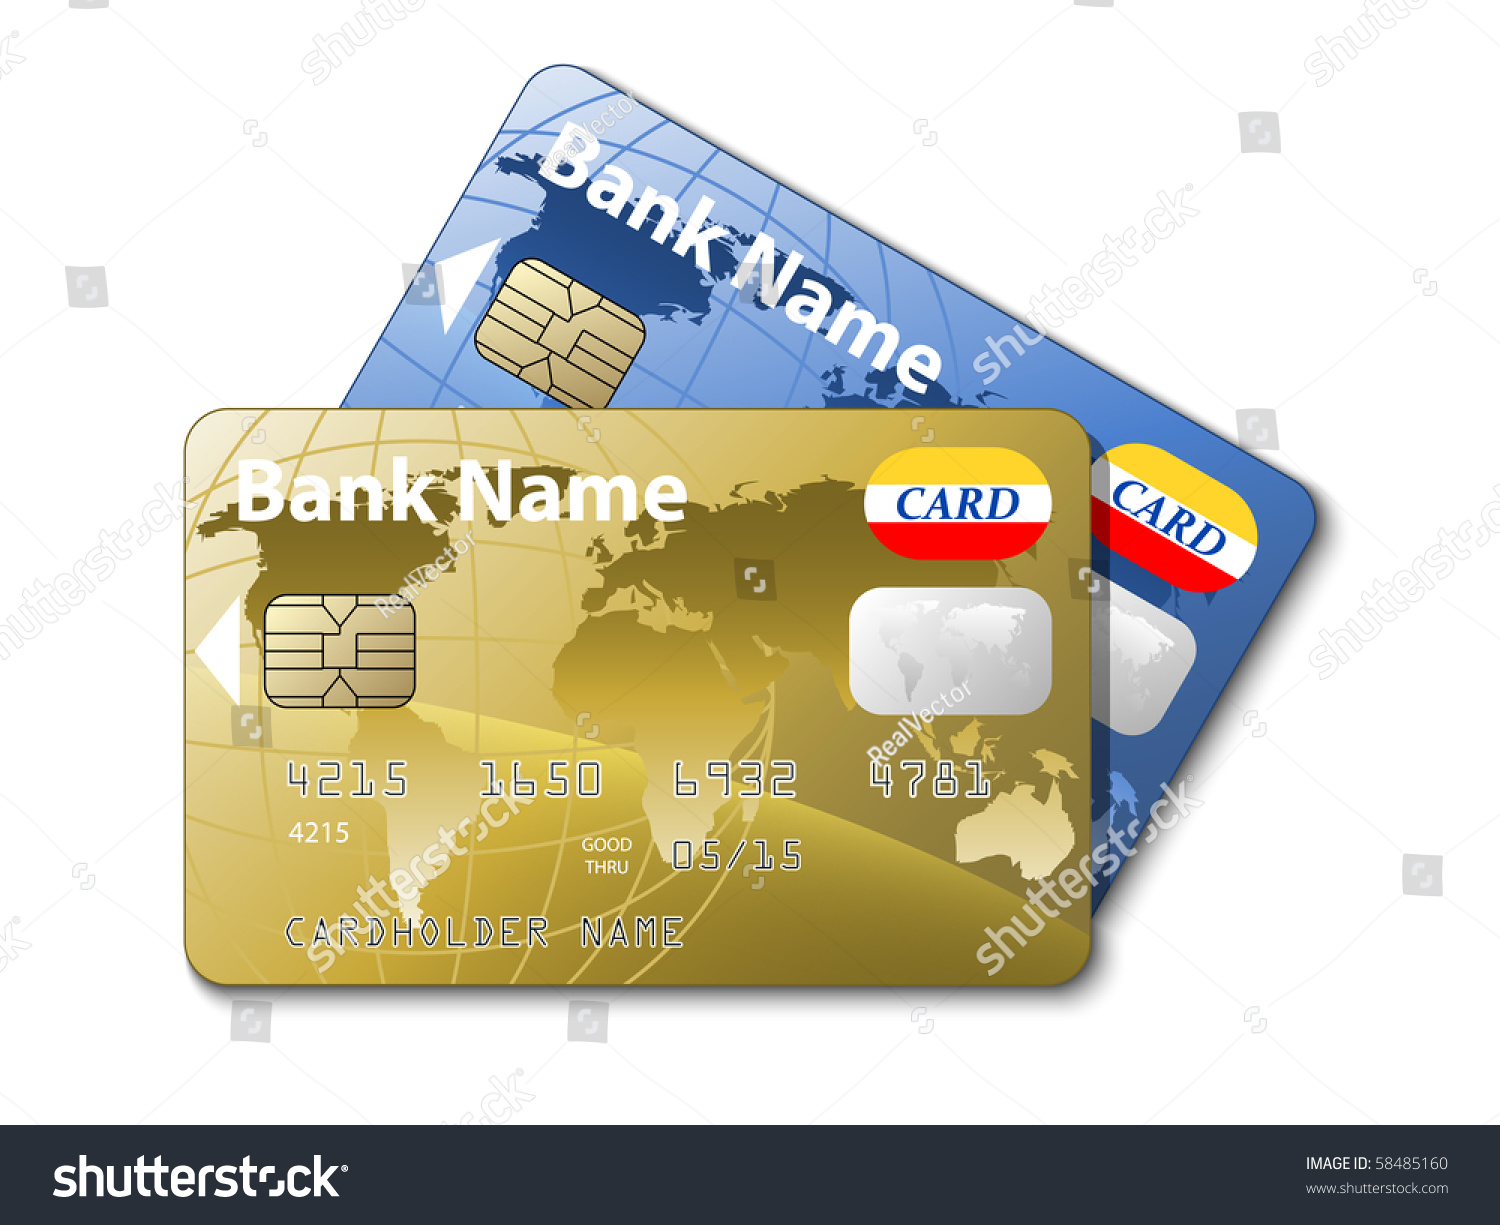 Изображения для банковских карт